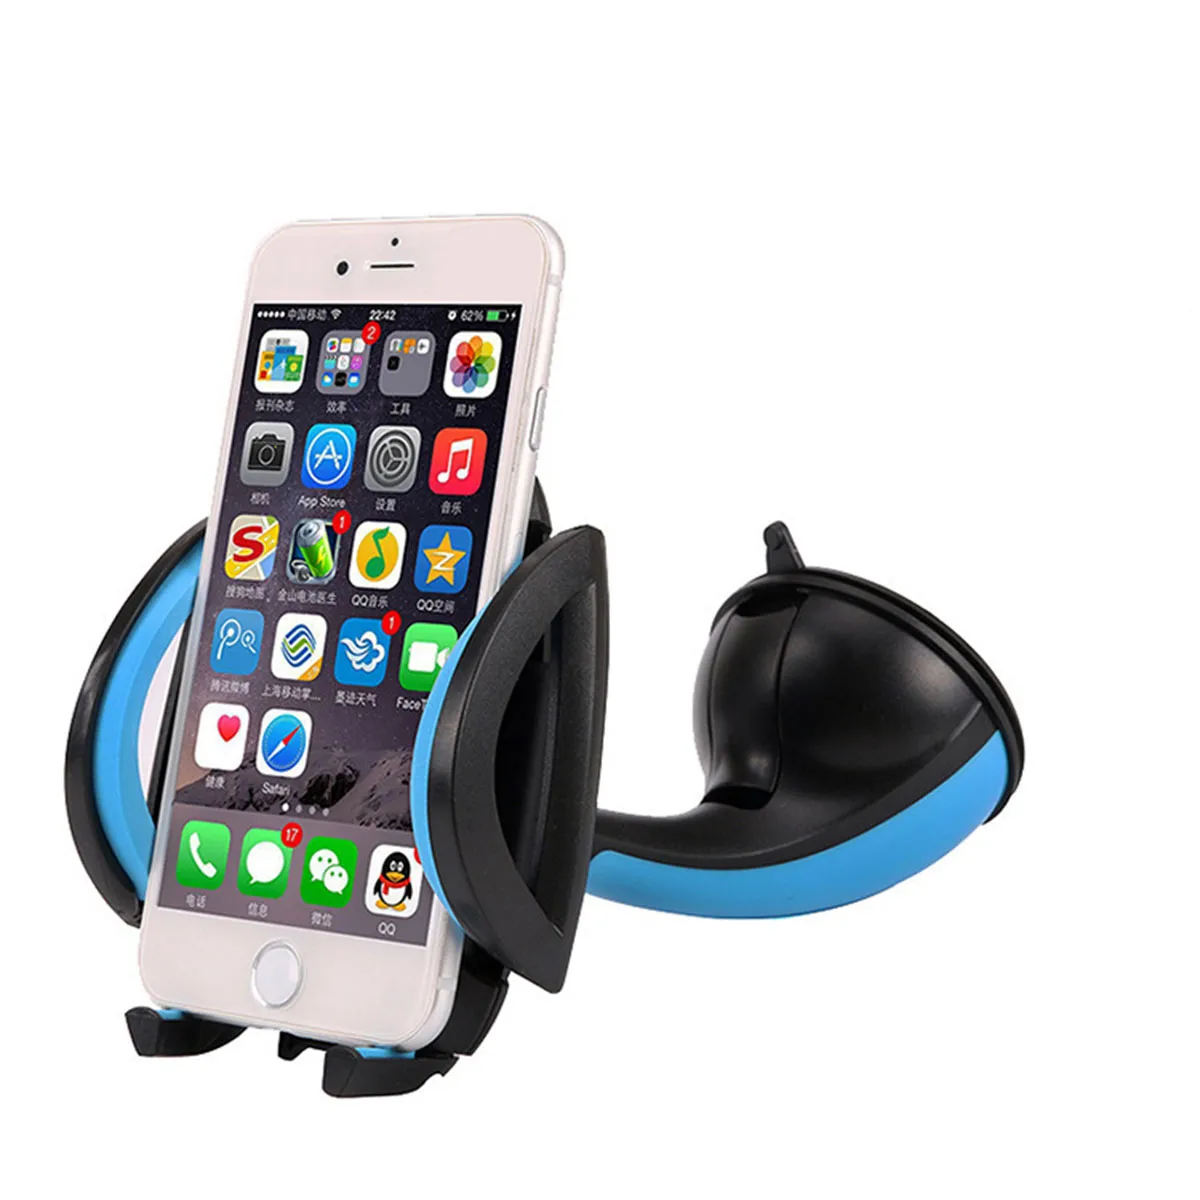 Автомобиля лобовое стекло приборной панели держатель стенд 360° вращение универсальный для iPhone Sumsung GPS КПК мобильный телефон